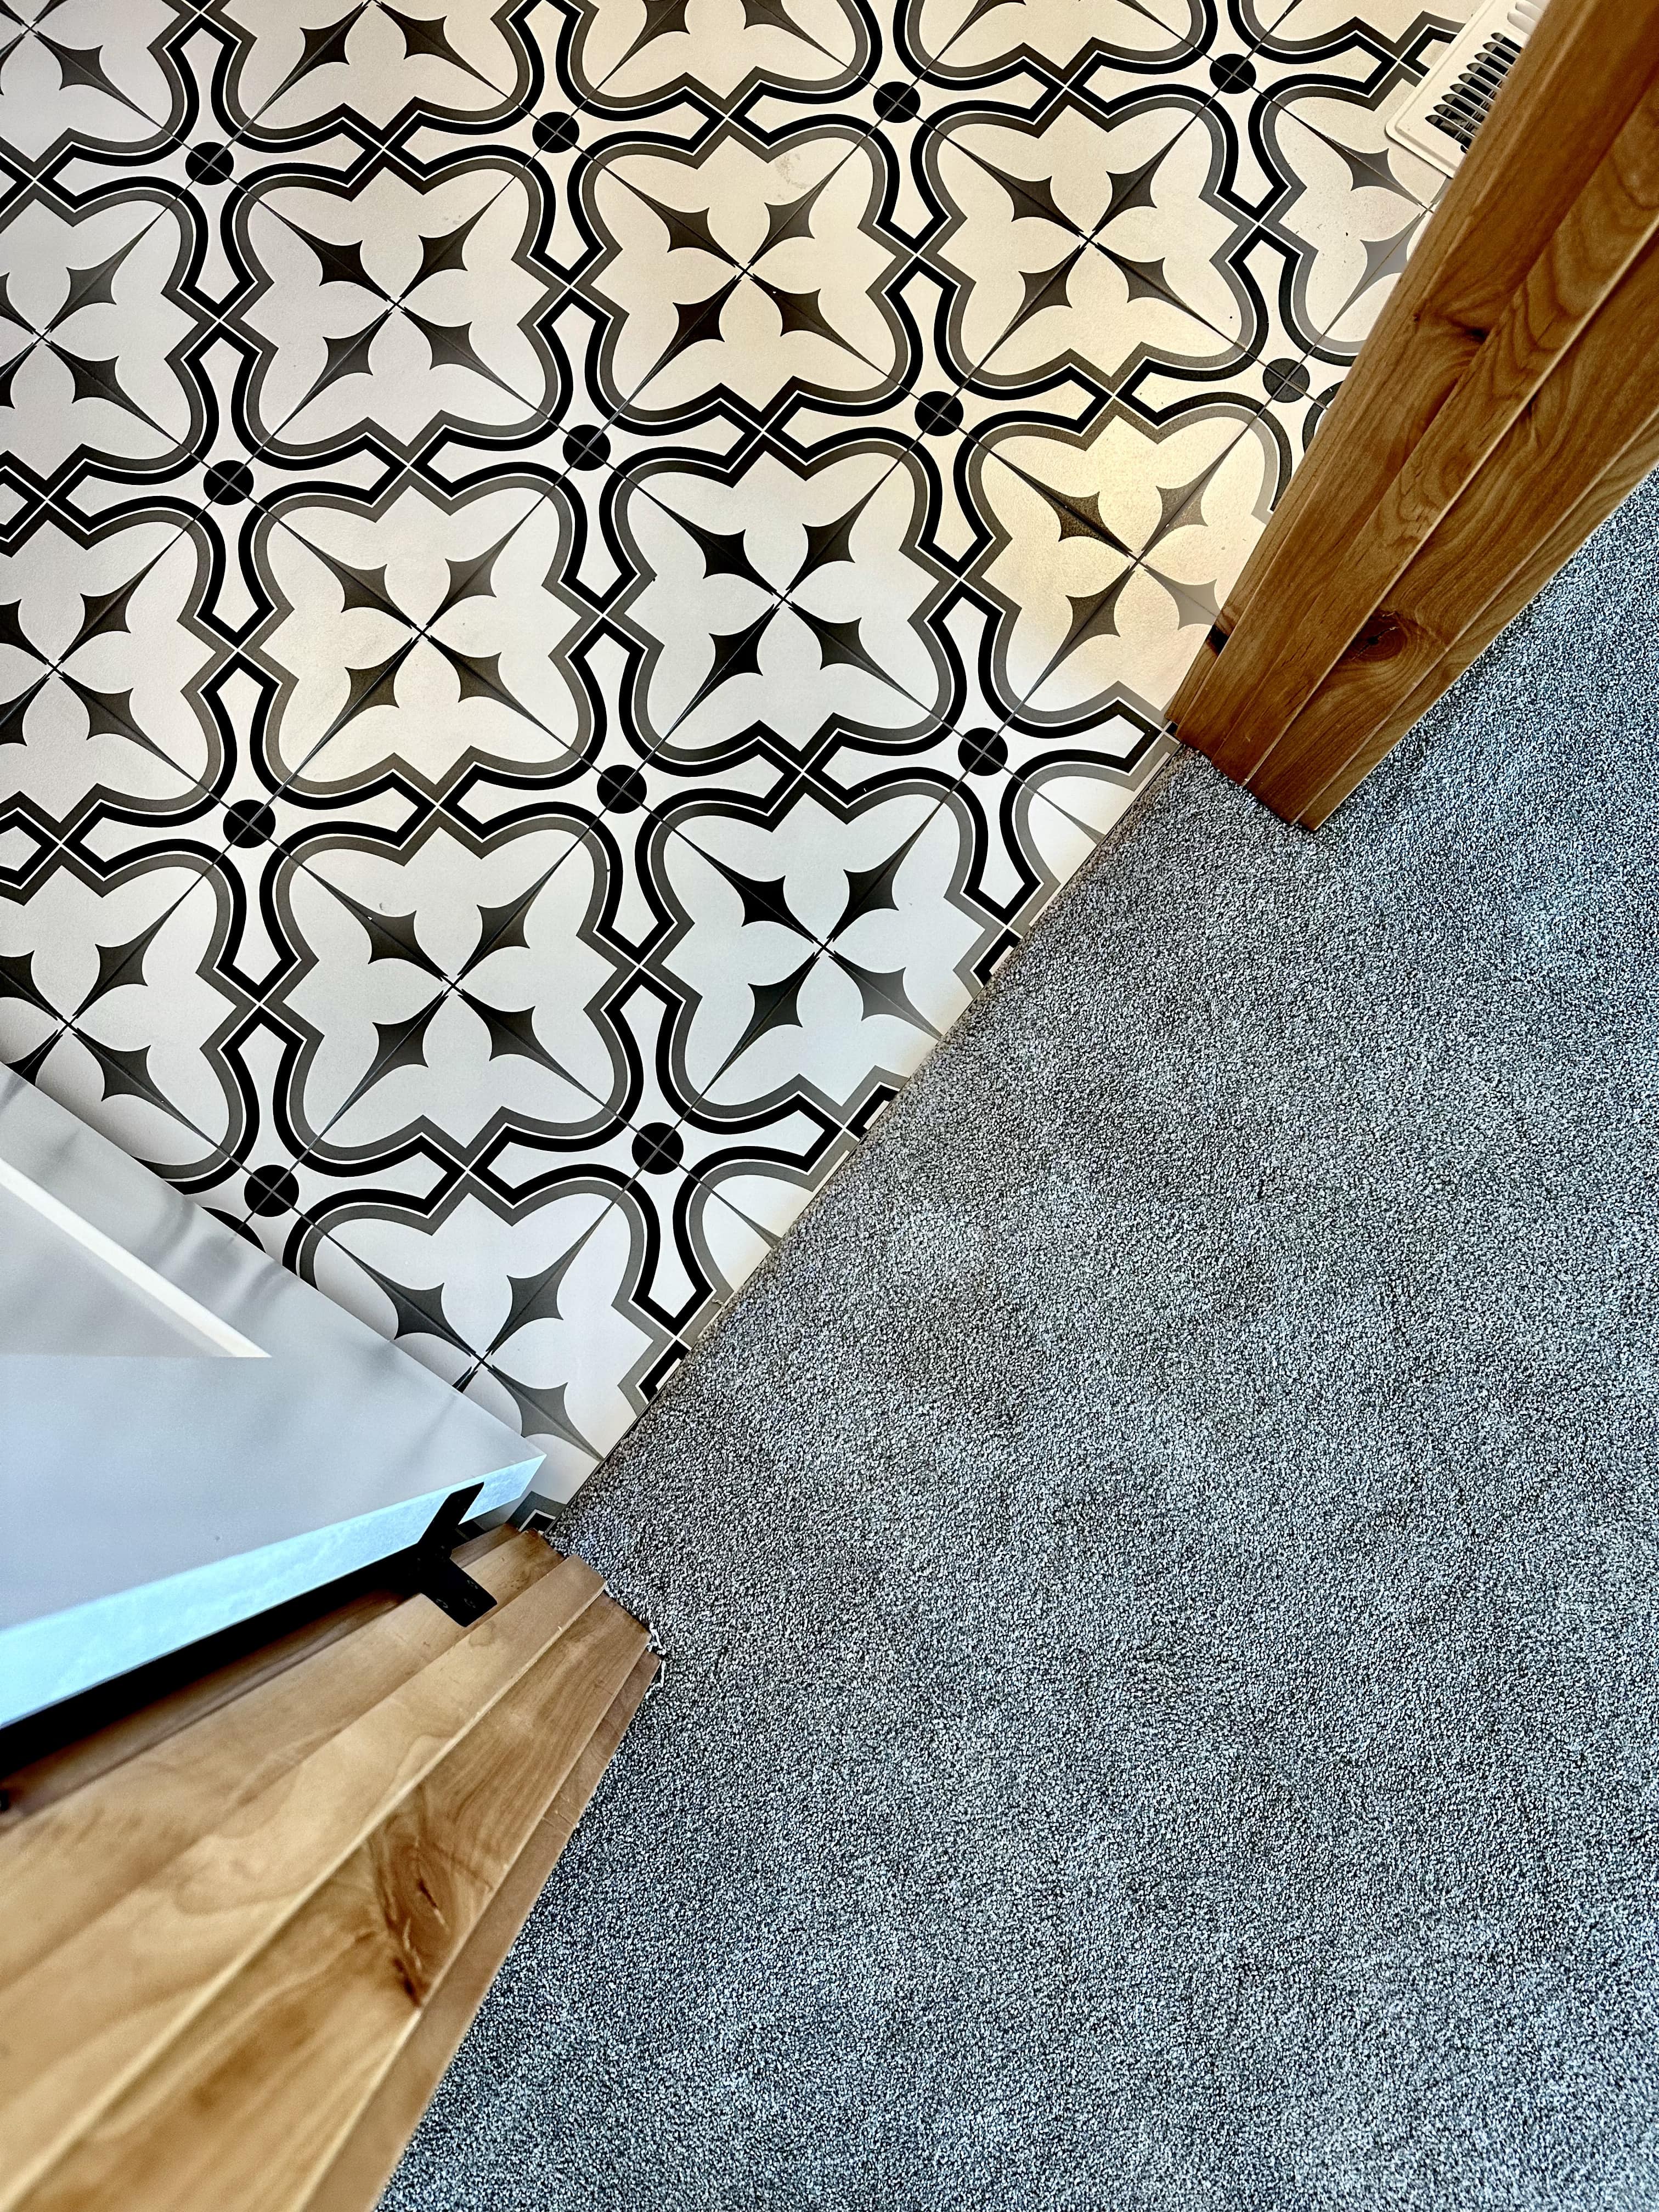 Tile design | Kelly's Carpet Omaha